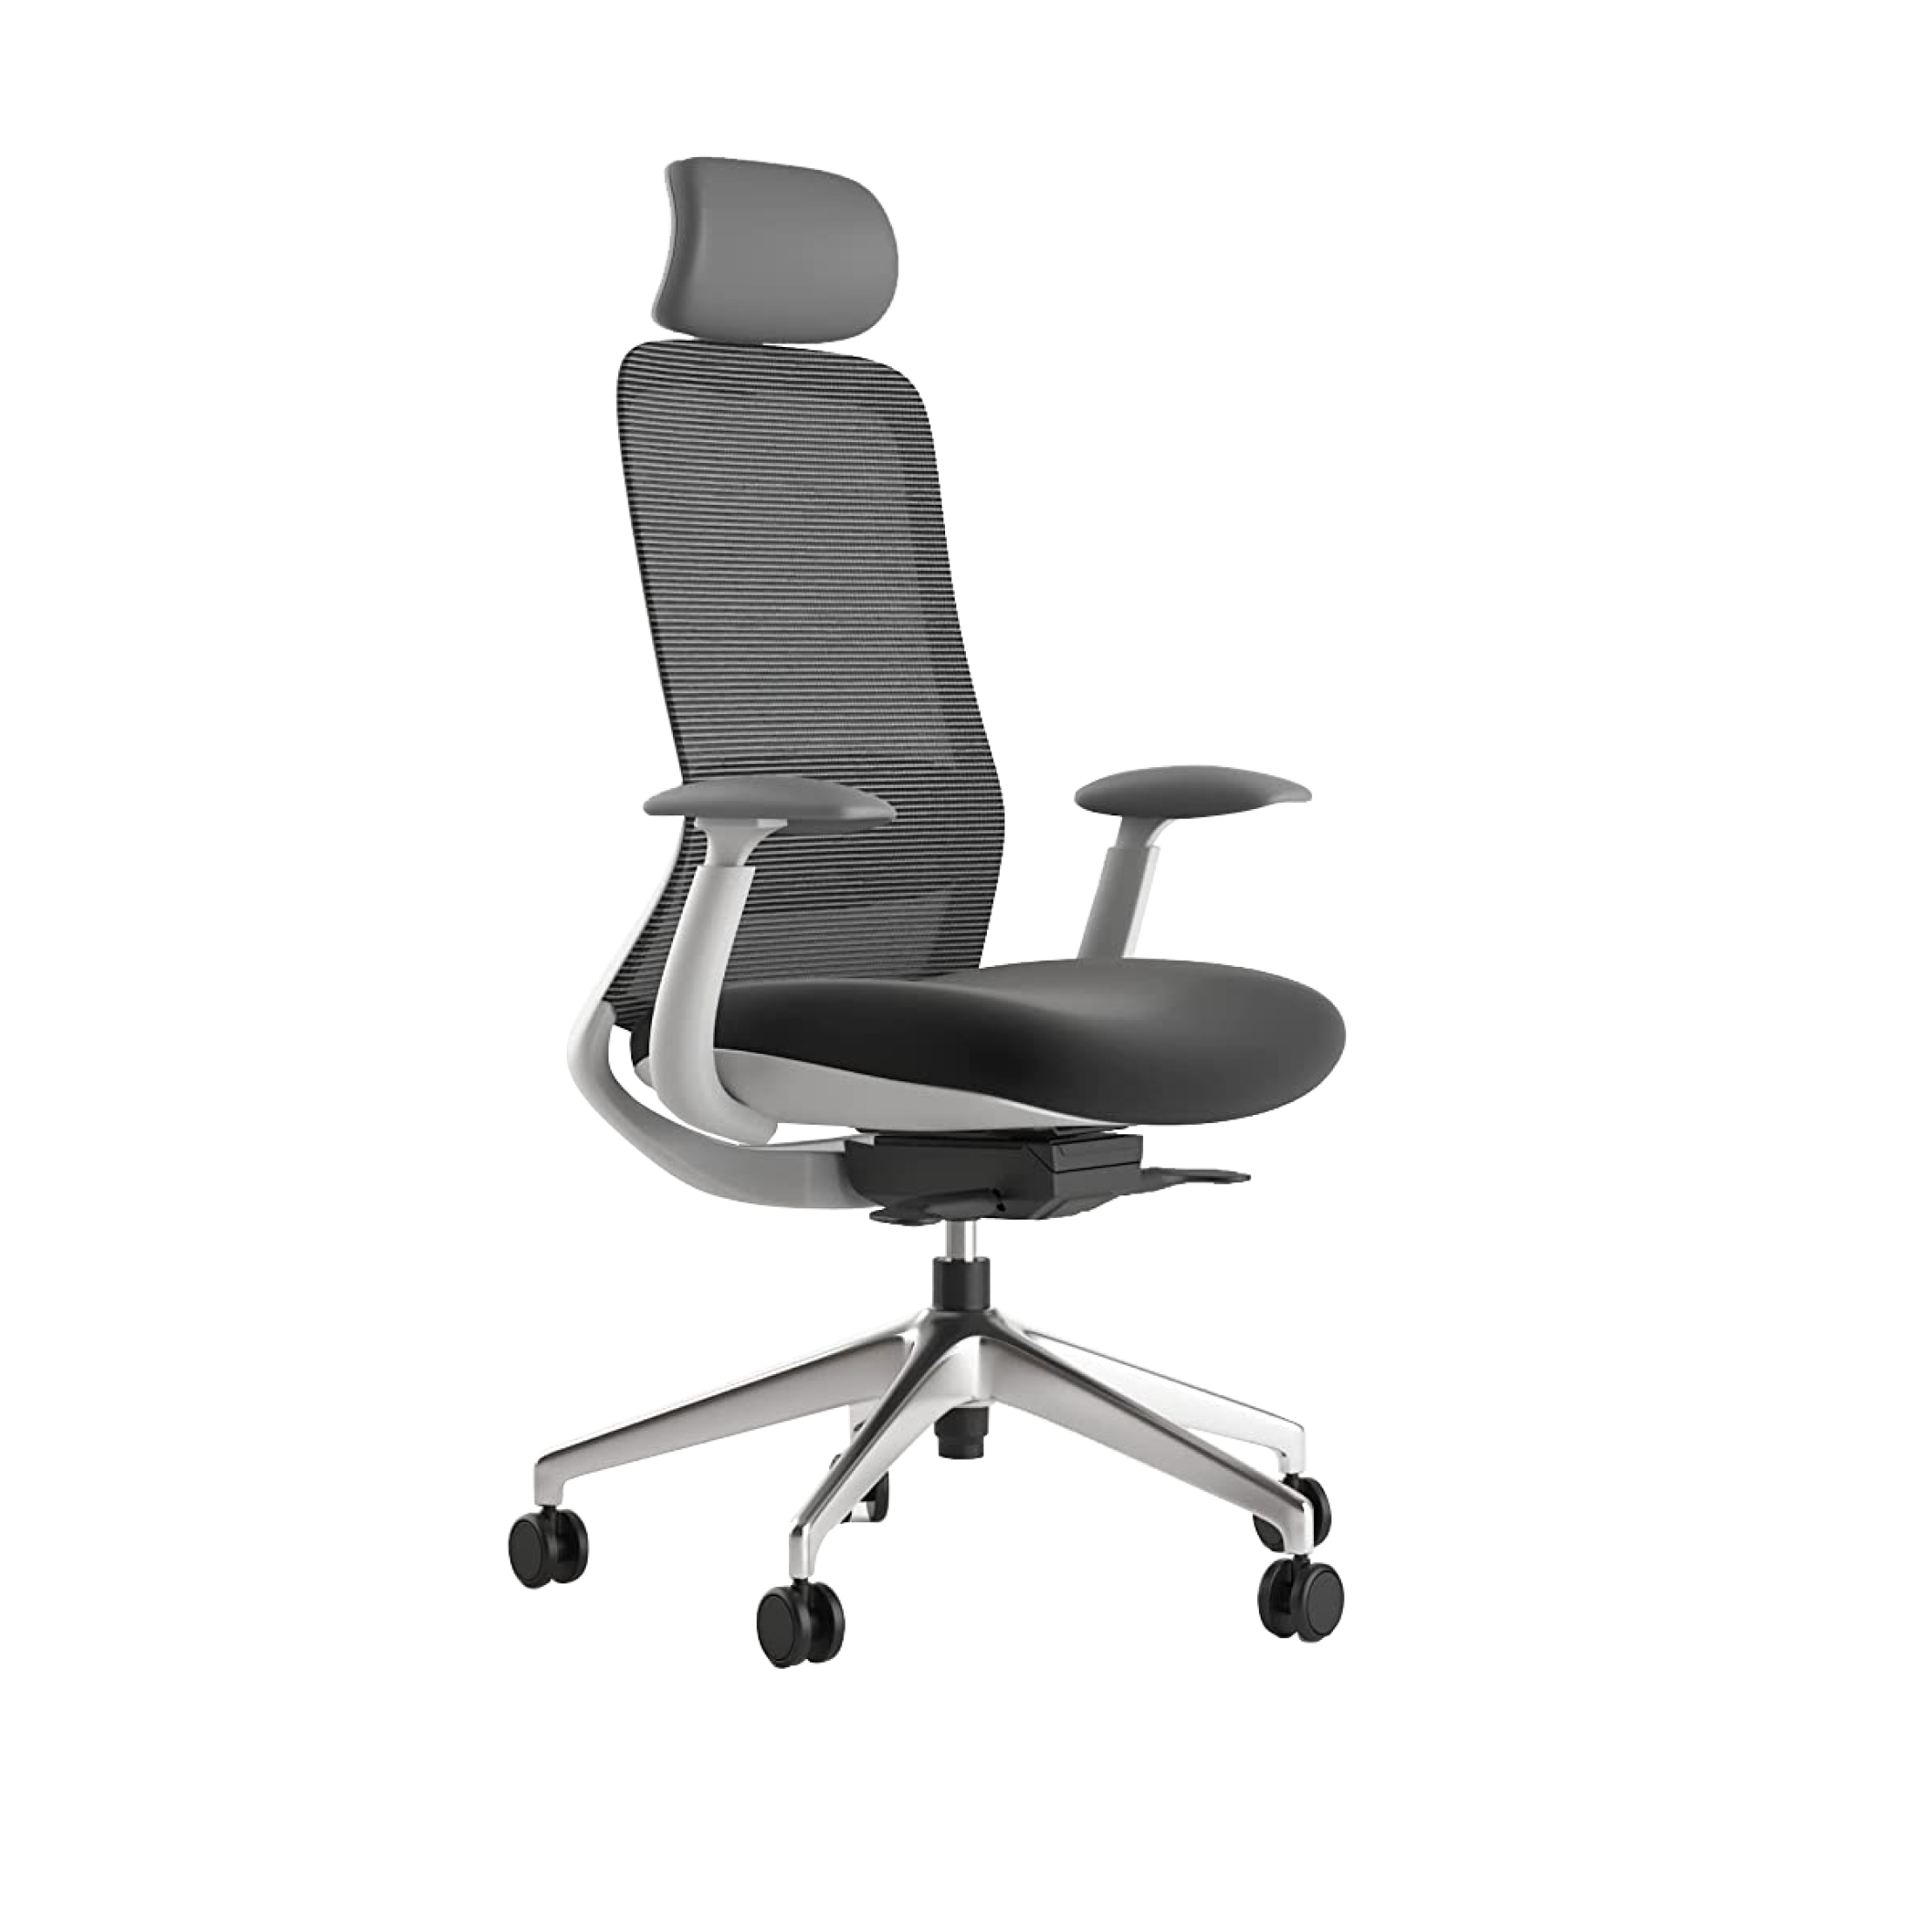 NIO Chair | Office Chairs Dubai | Ergonomic Chair